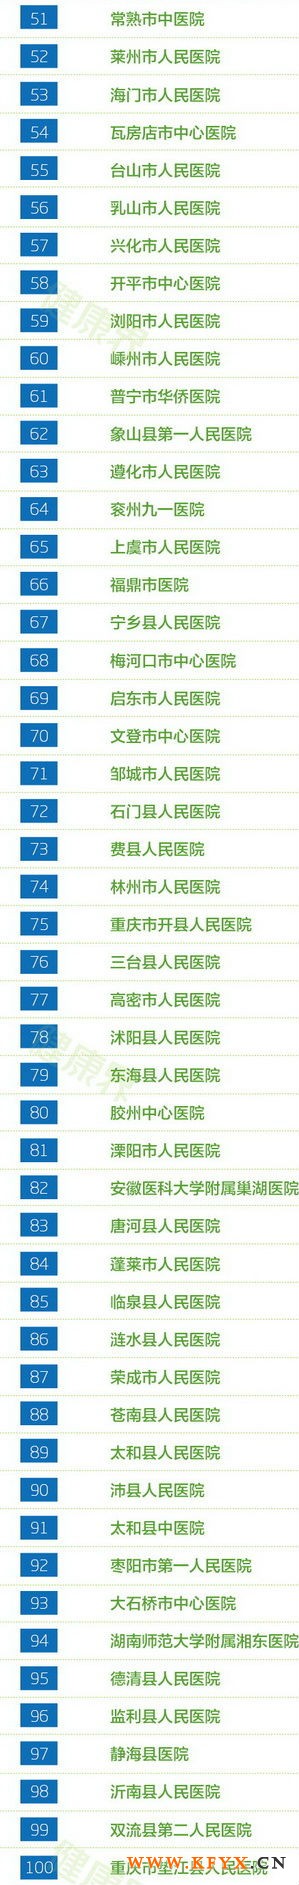 2013年中国县级医院竞争力100强排行(2)